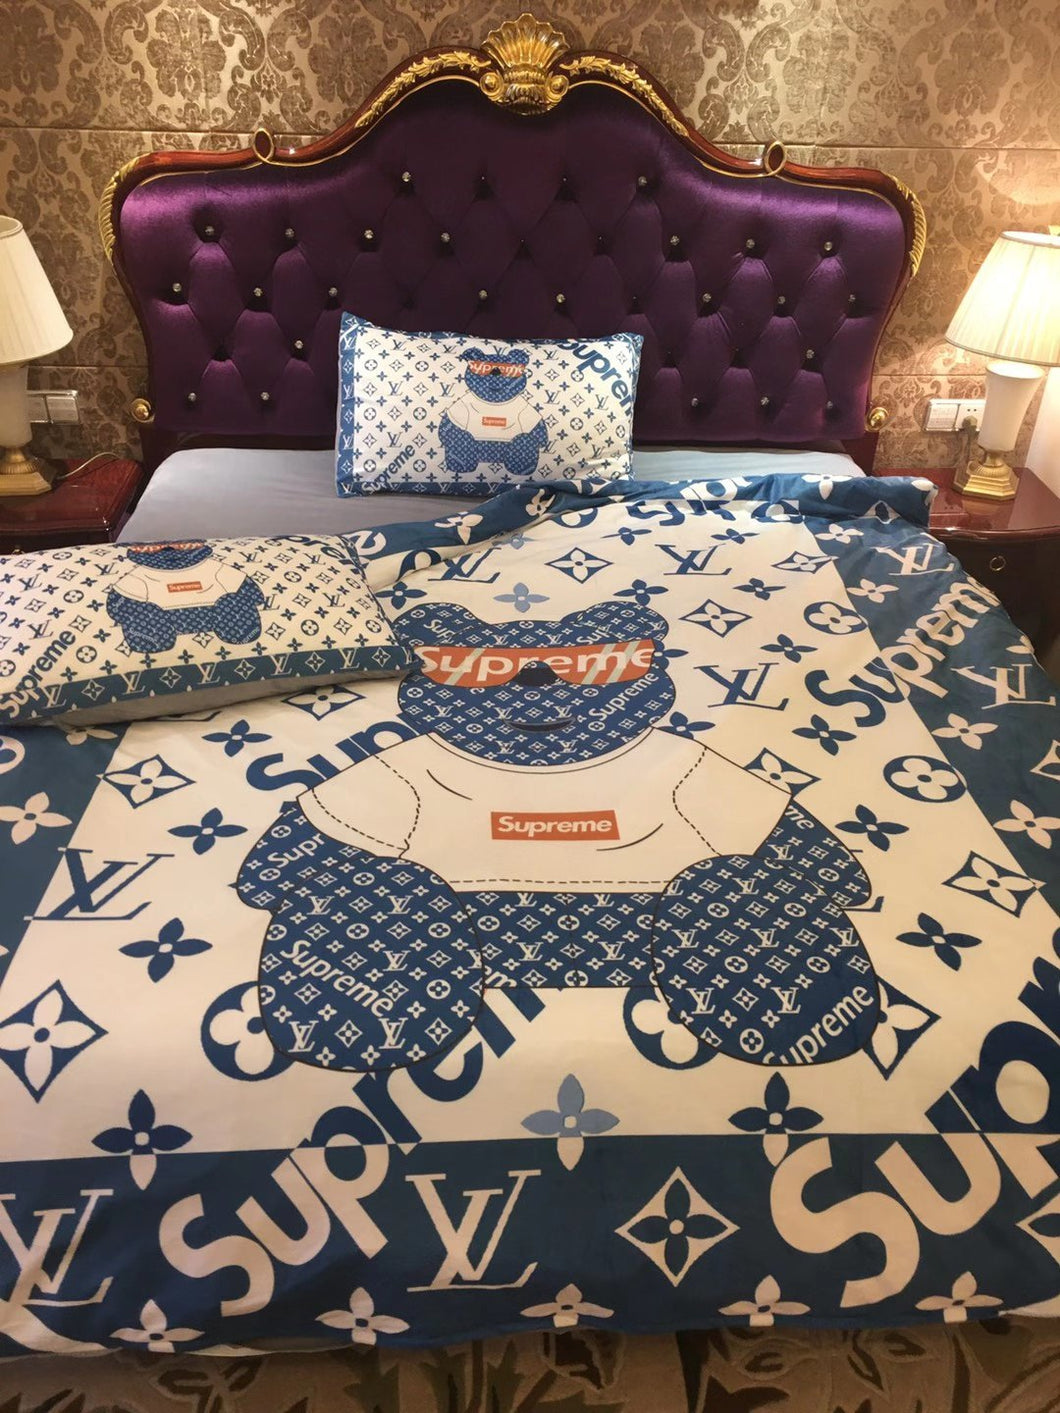  Louis Vuitton bed set